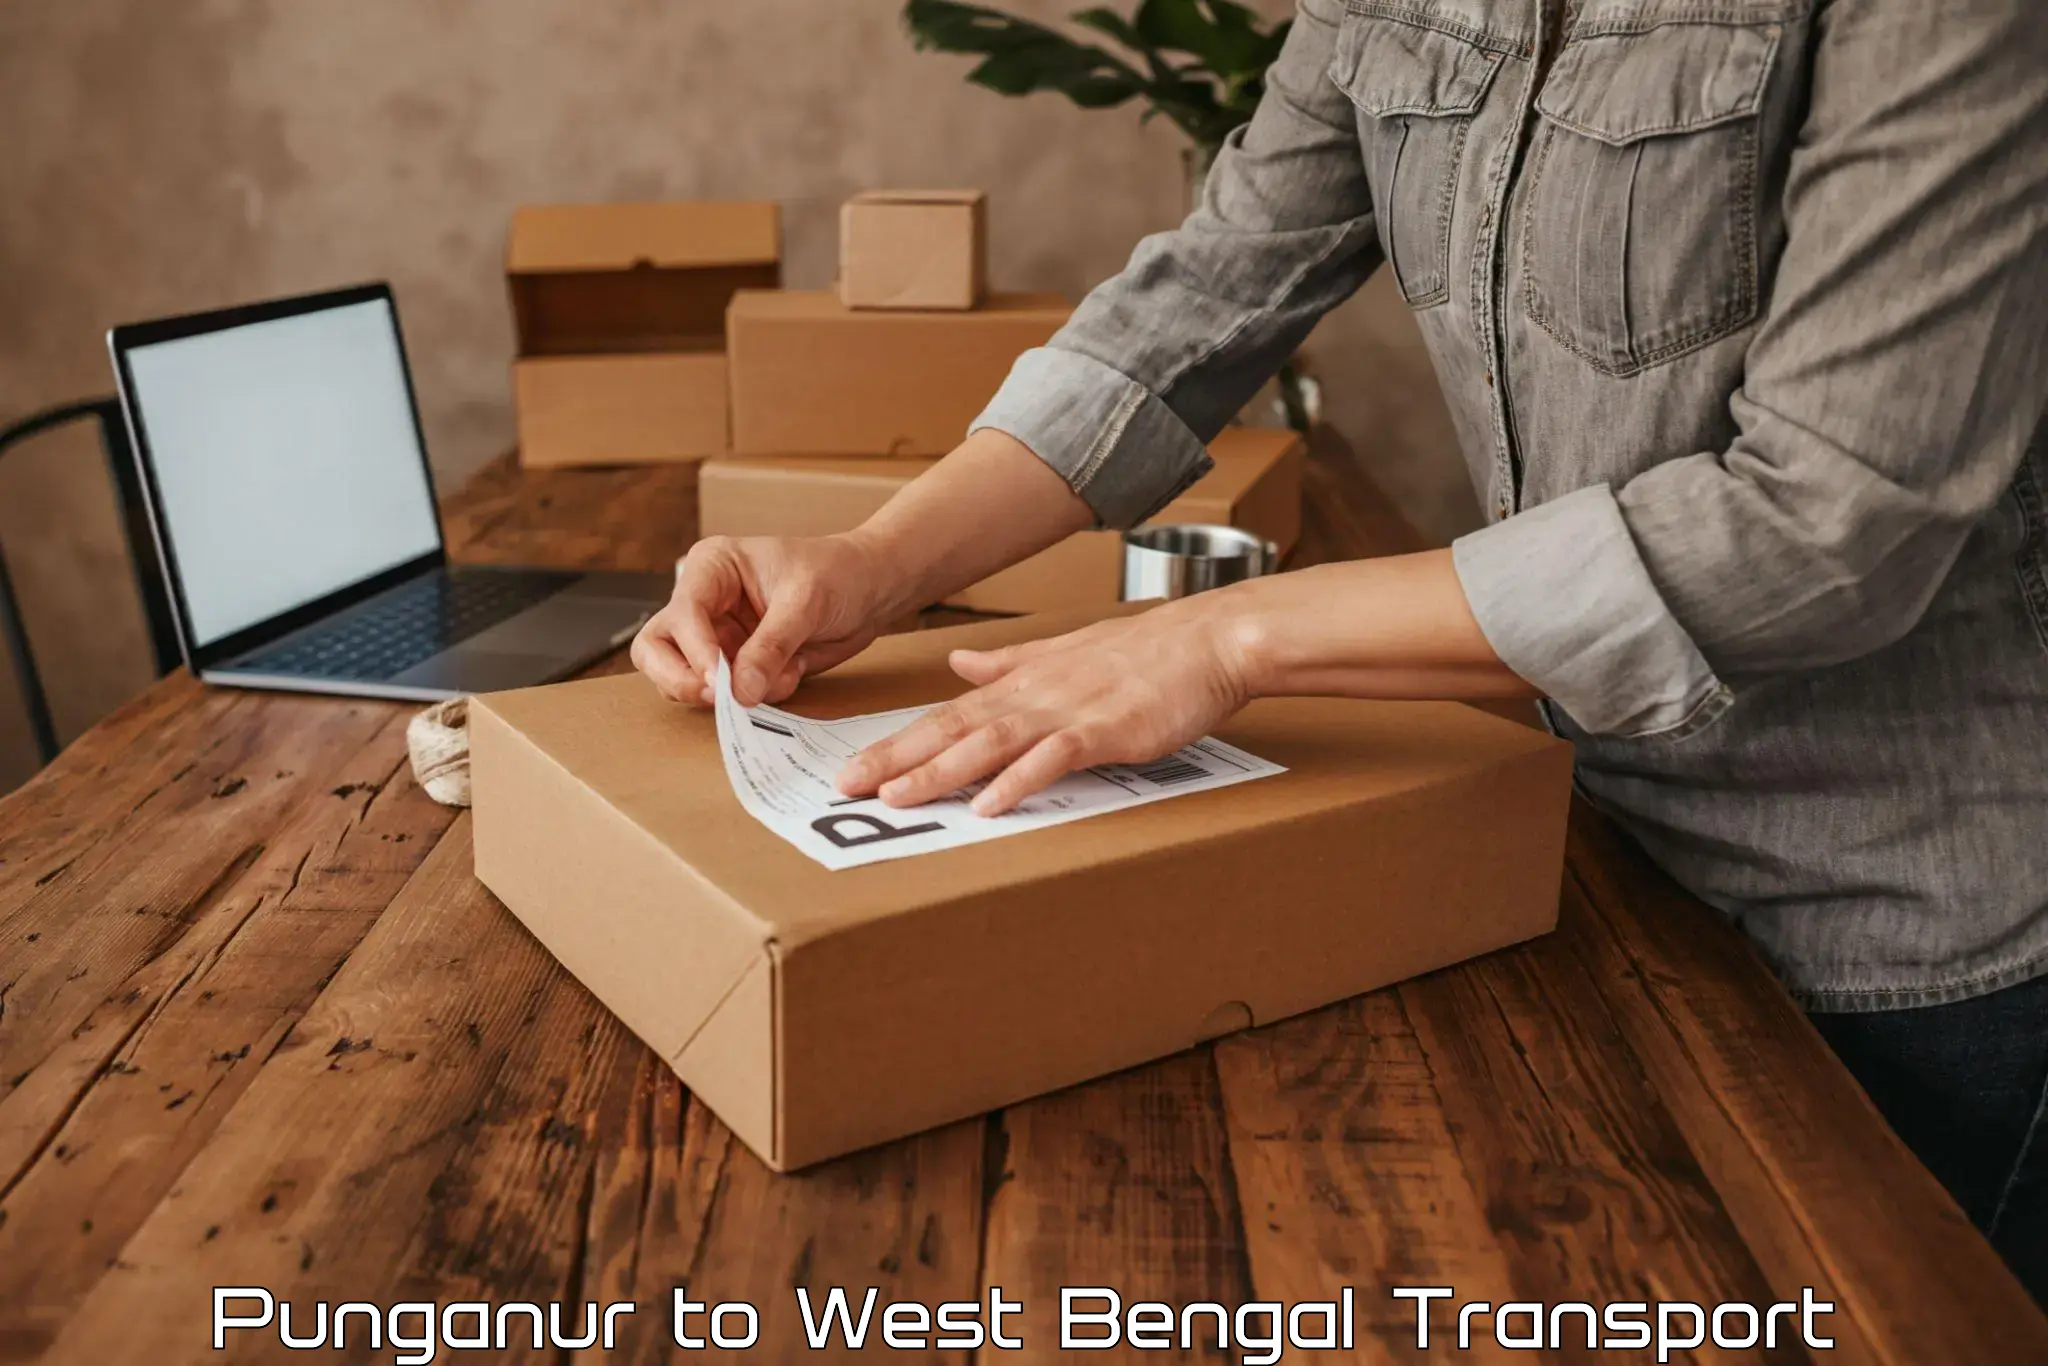 Lorry transport service Punganur to Maynaguri